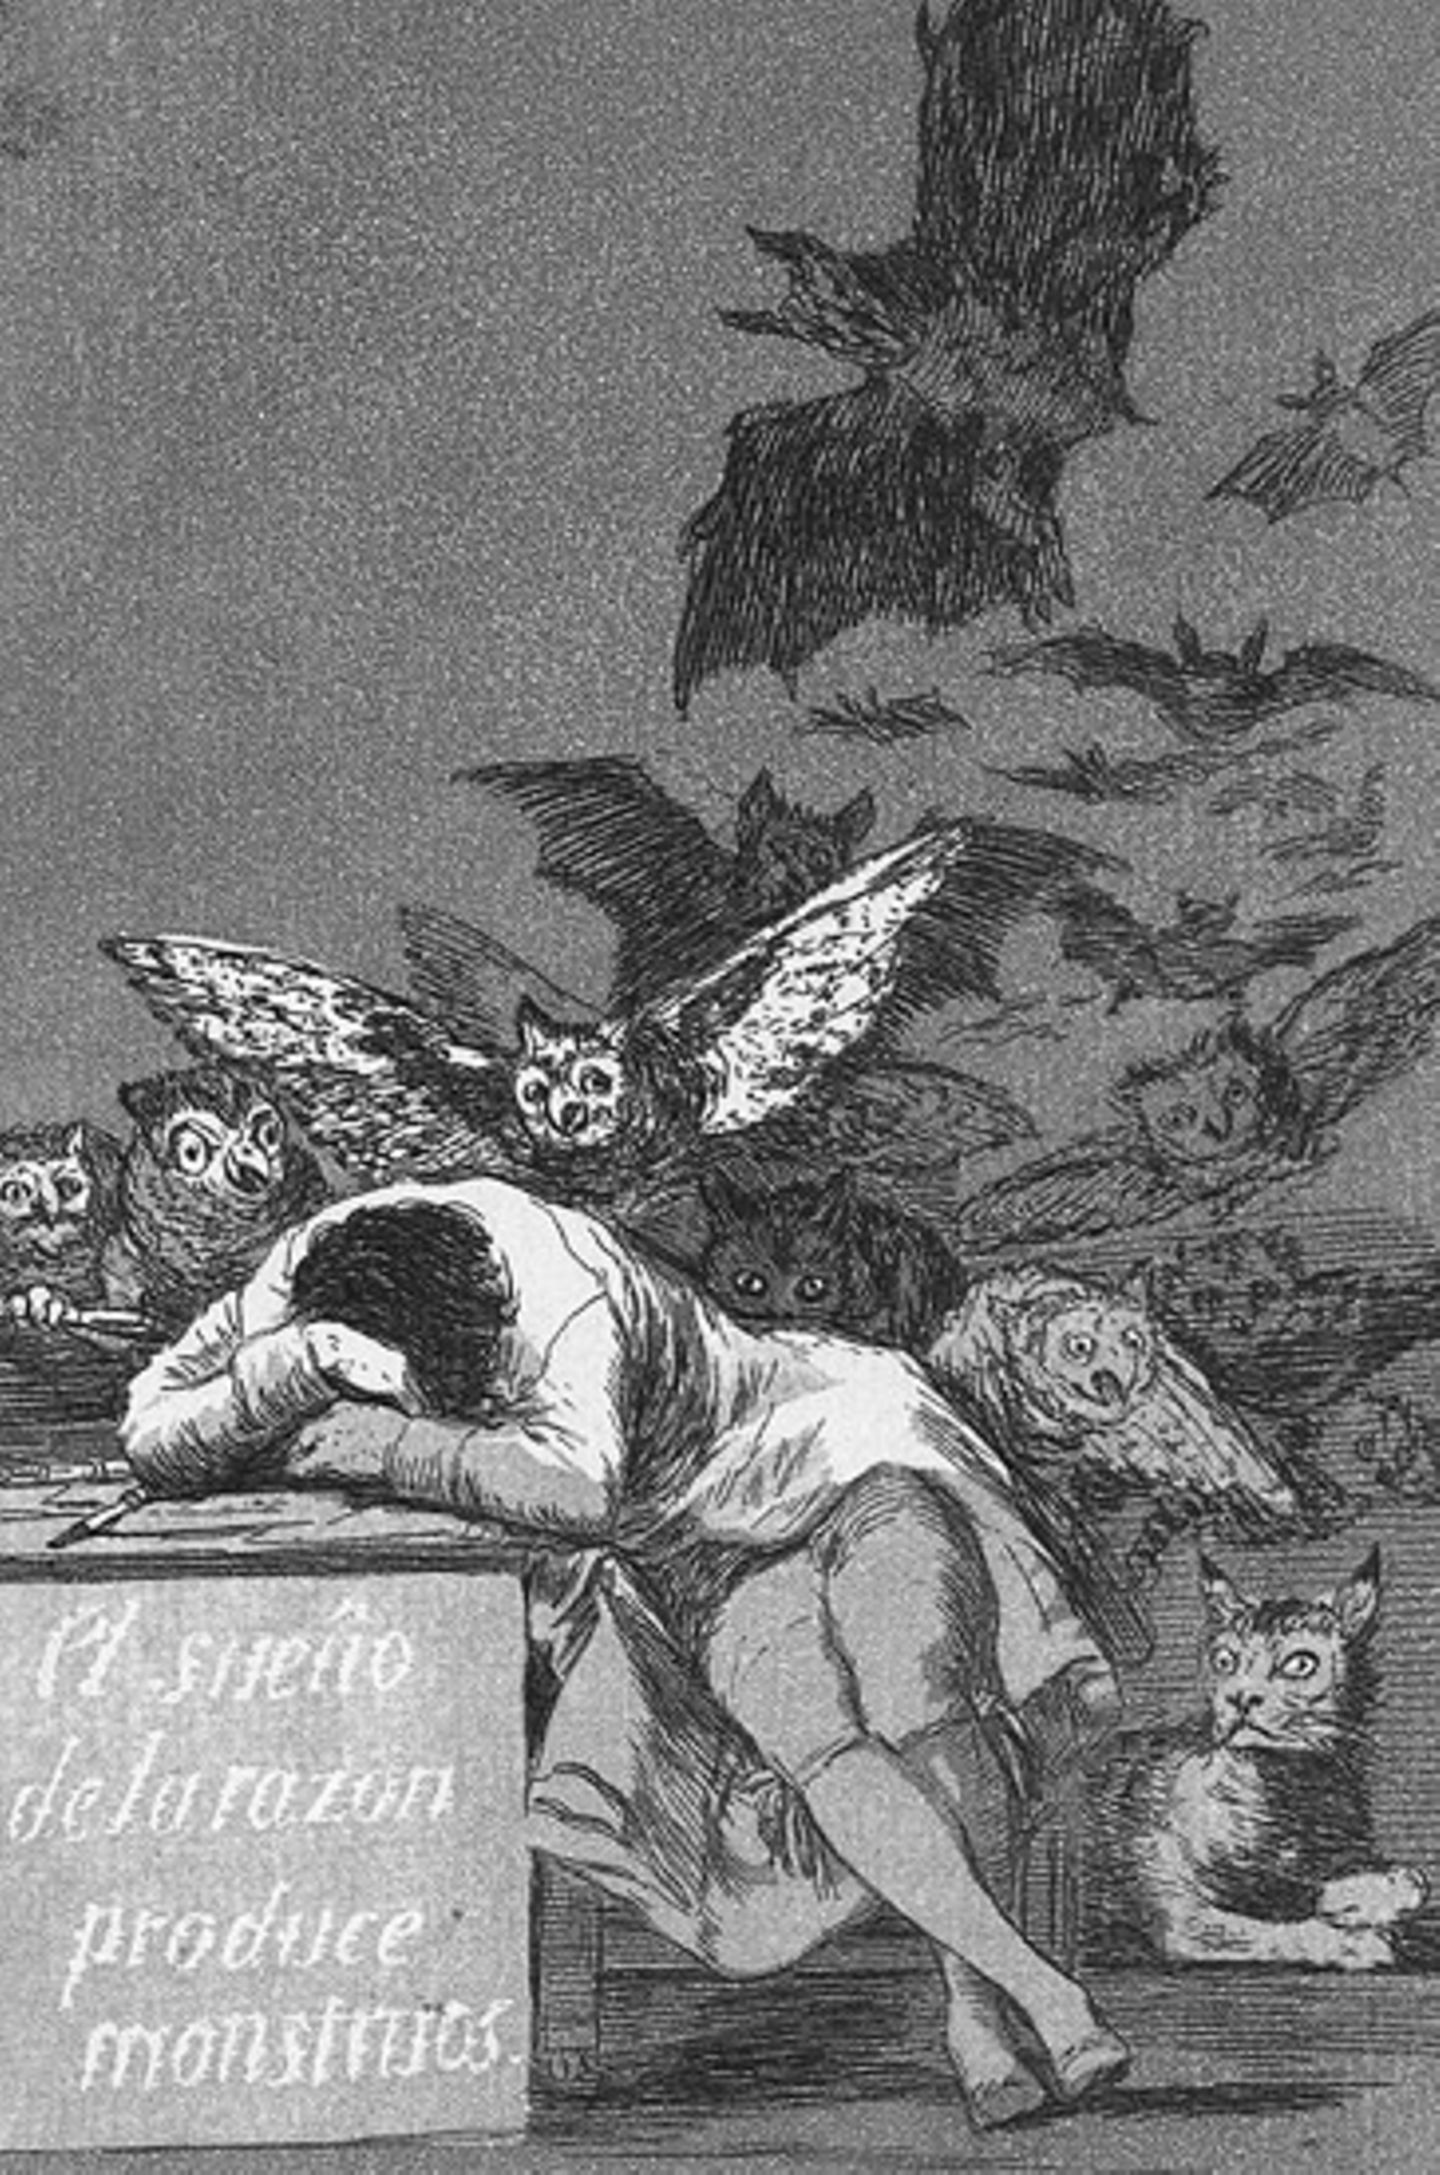 Spanische Geschichte: Bildessay: Goyas Schreckgespenster